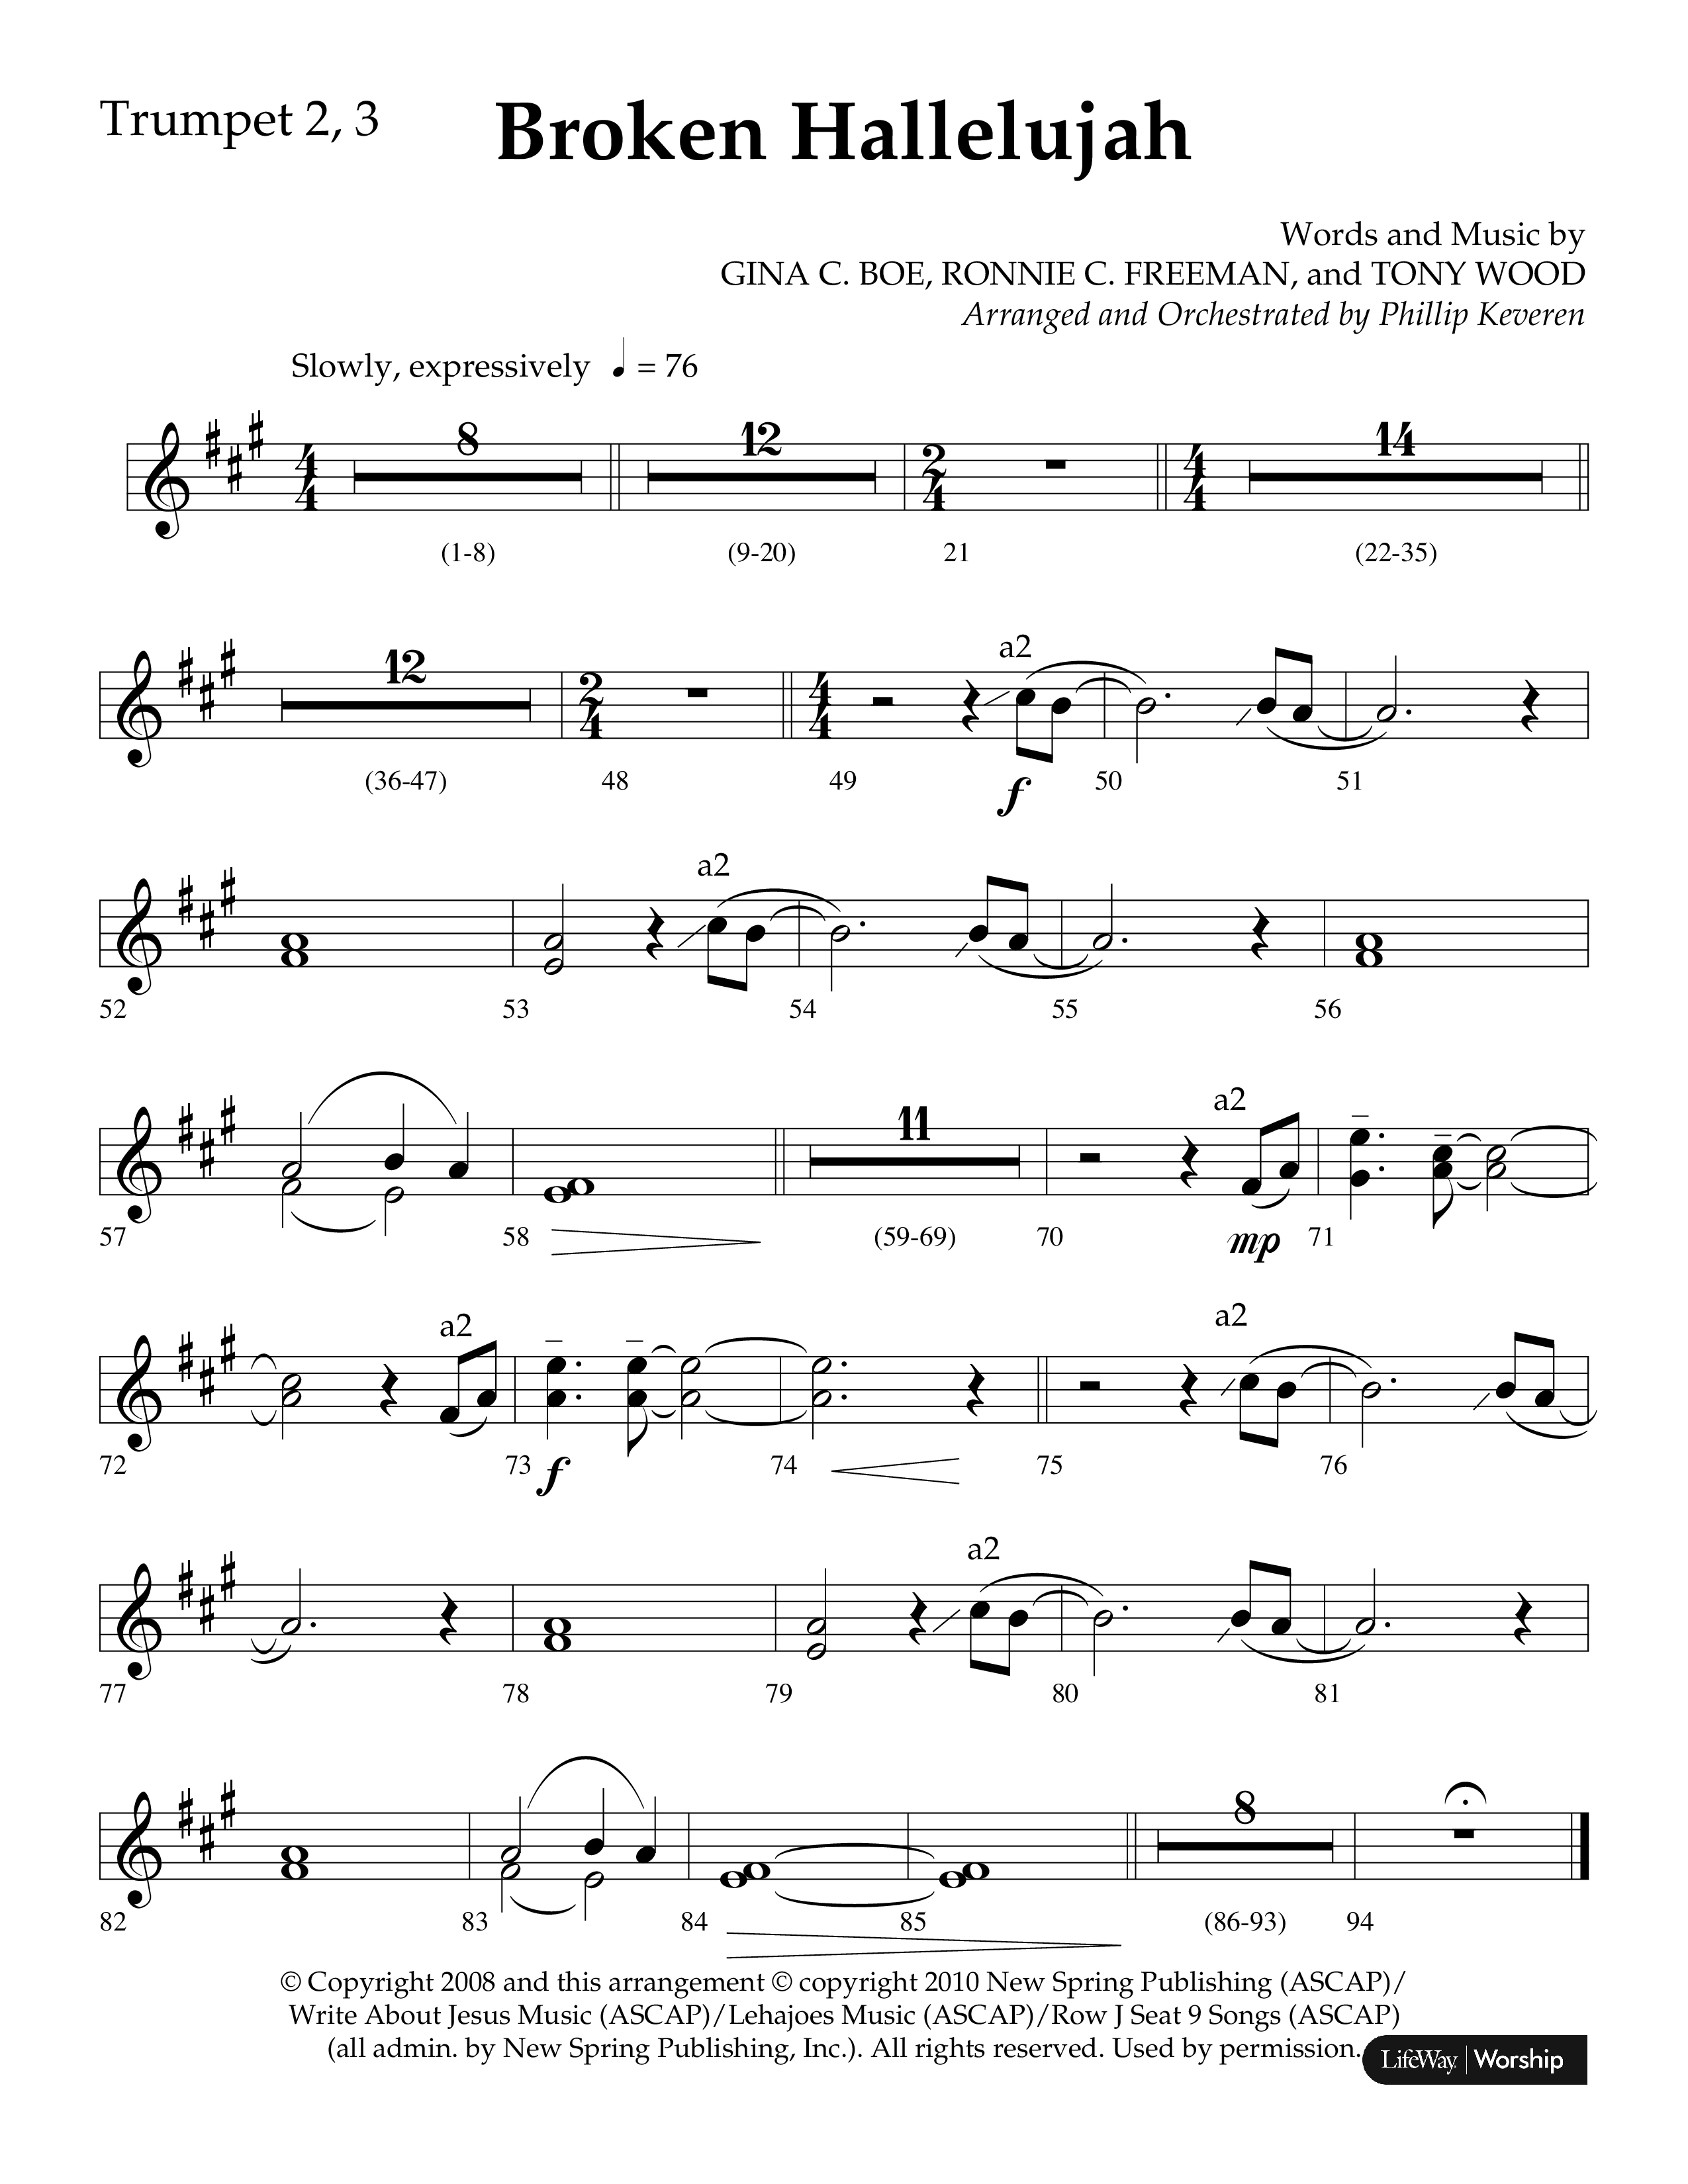 Broken Hallelujah (Choral Anthem SATB) Trumpet 2/3 (Lifeway Choral / Arr. Phillip Keveren)